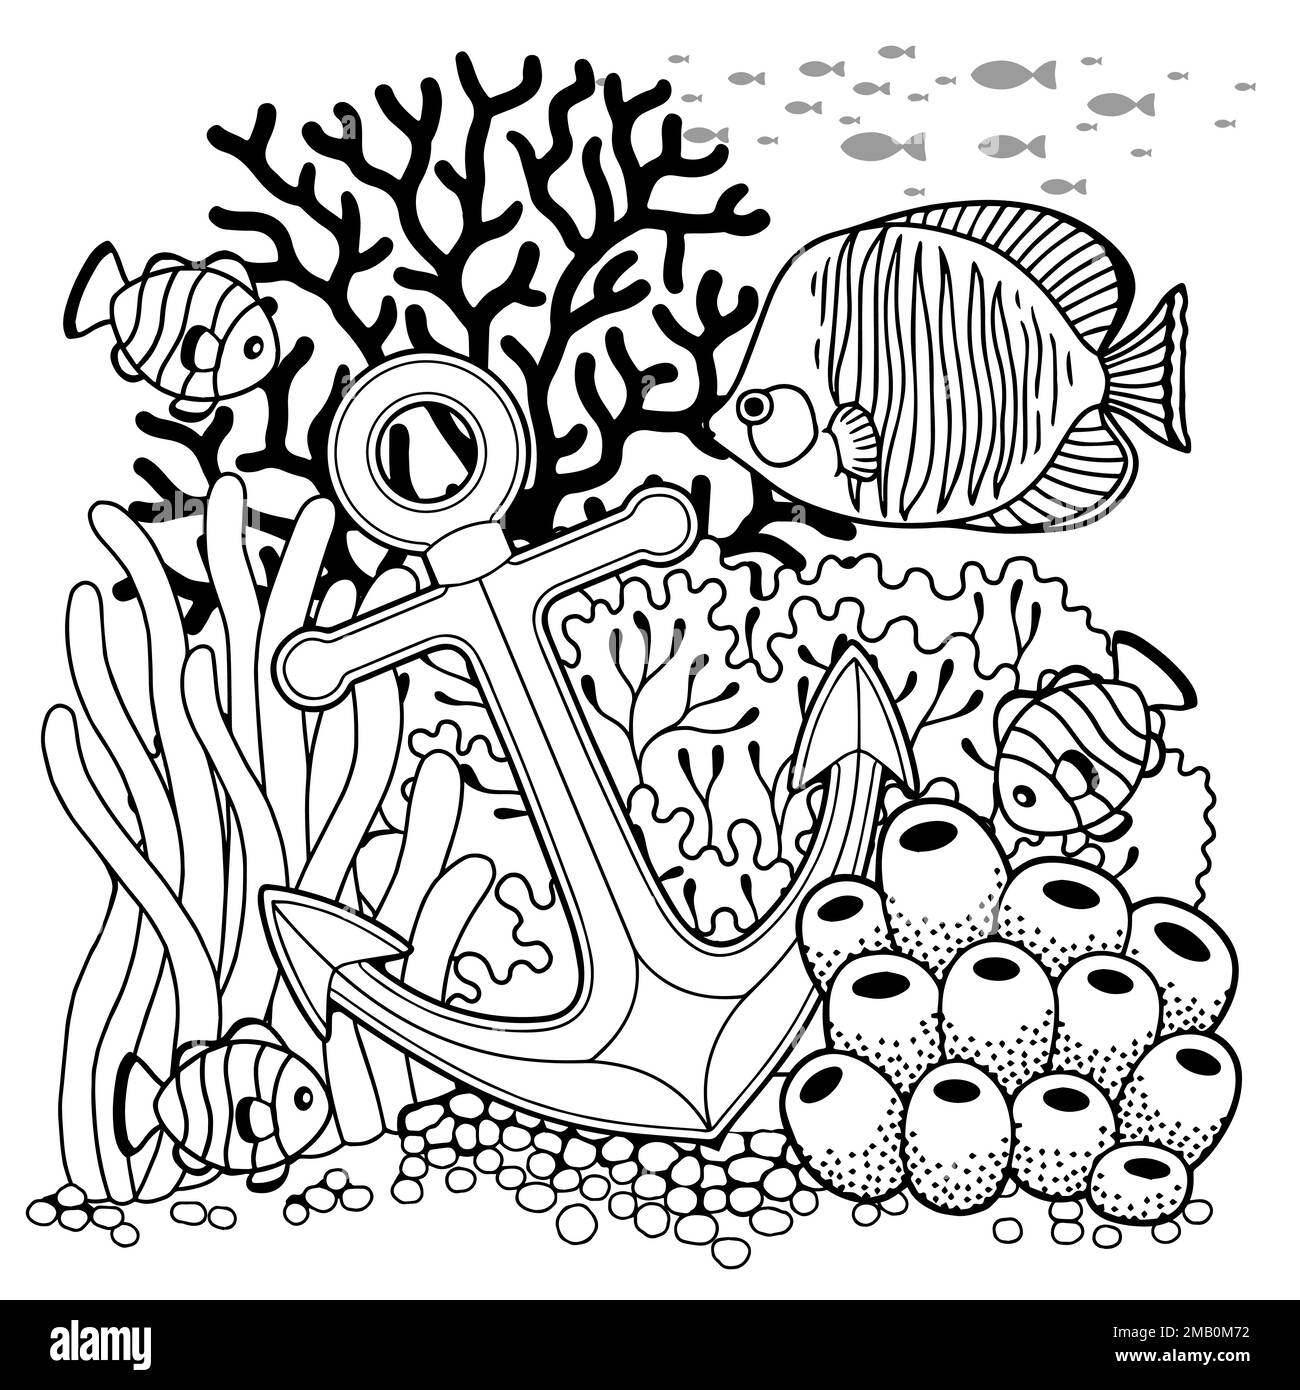 Page de livre de coloriage vectoriel pour adultes. Illustration en noir et blanc de la vie sous-marine, de la créature marine, de la carapace, des algues et des poissons Illustration de Vecteur